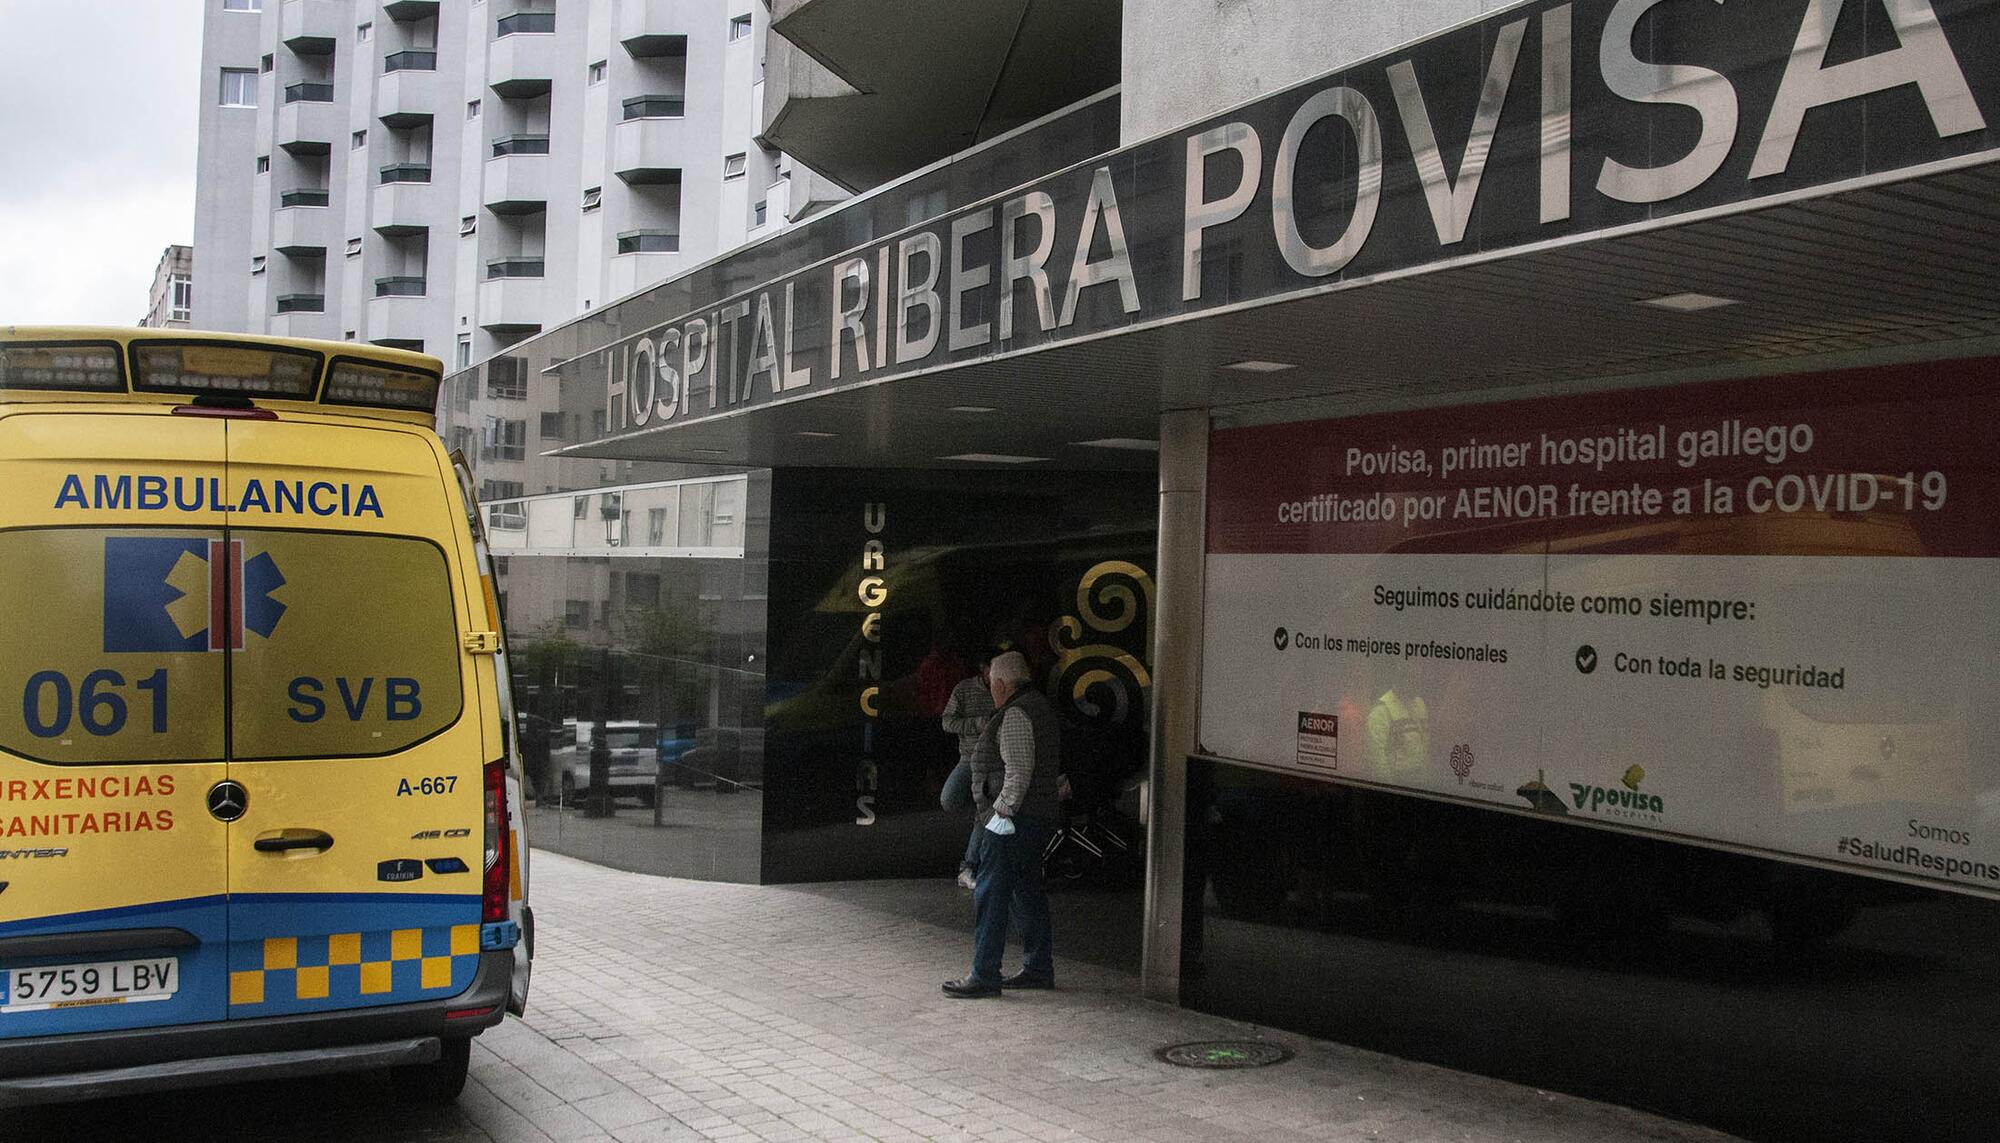 Hospital Povisa Ribera Salud en Vigo - 3